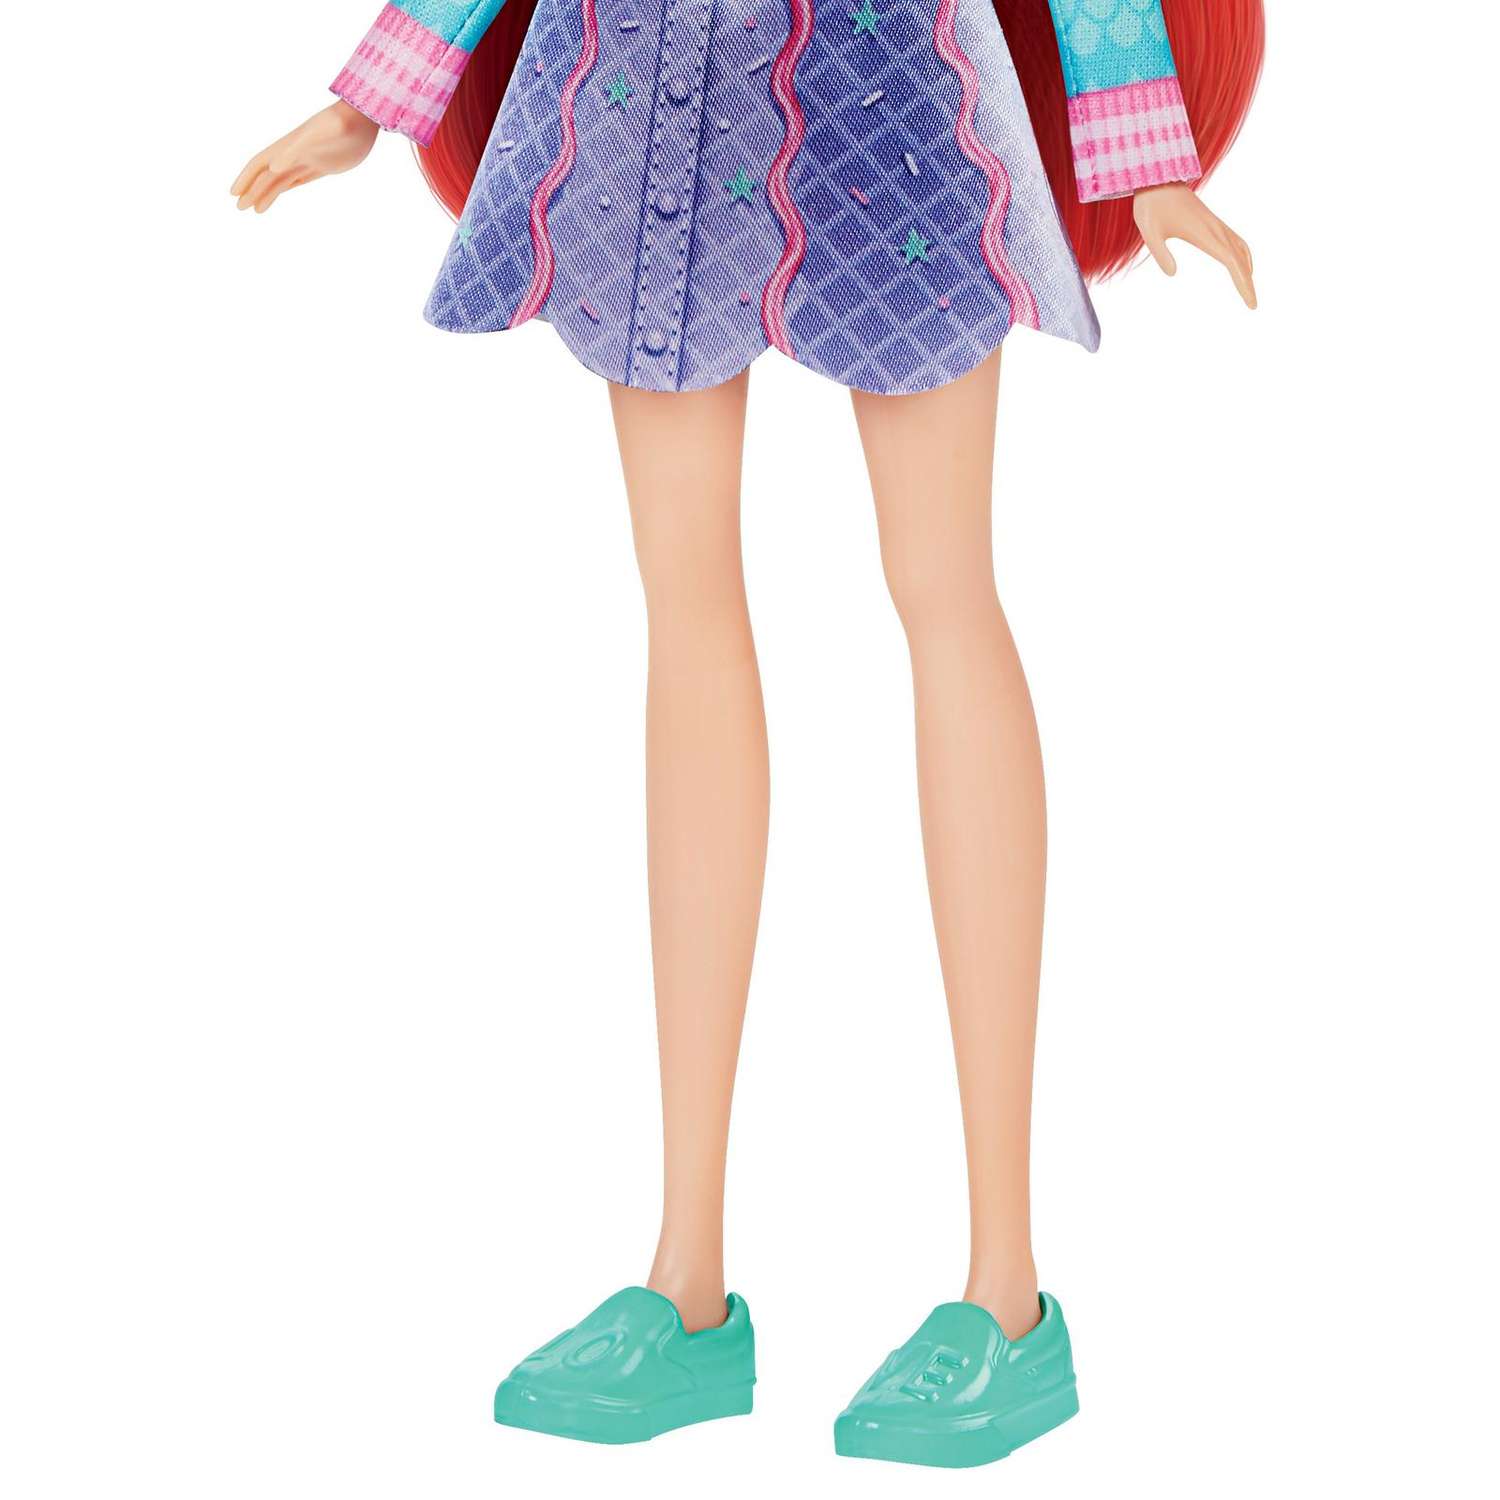 Кукла Disney Princess Disney Princess Hasbro Комфи Ариэль 2наряда F23665X0 F23665X0 - фото 9